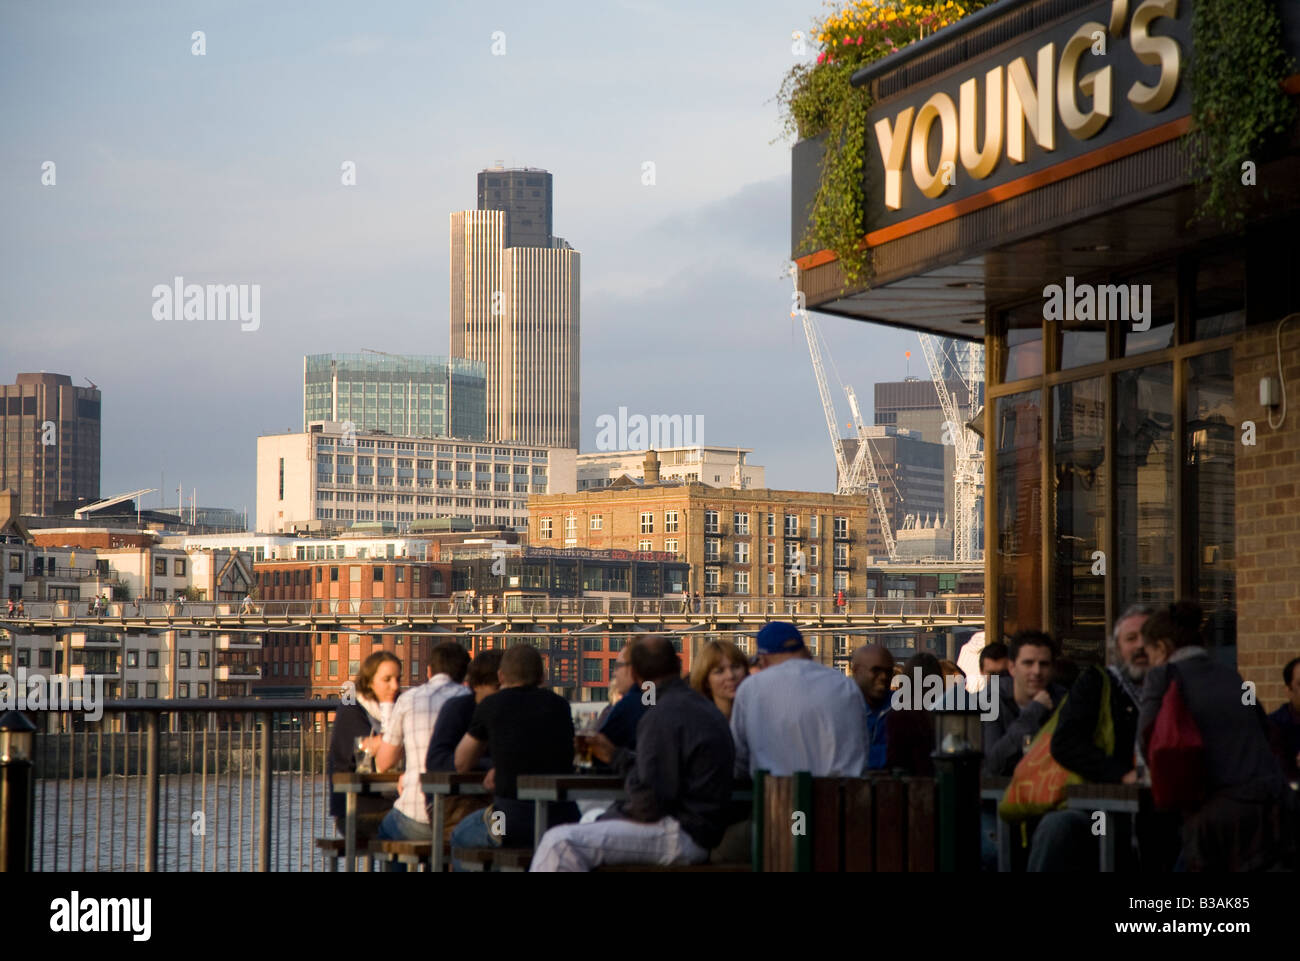 Menschen an der Gründer Arms Pub am Südufer trinken mit Tower 42 und City of London im Hintergrund differenzielle Fokus Stockfoto